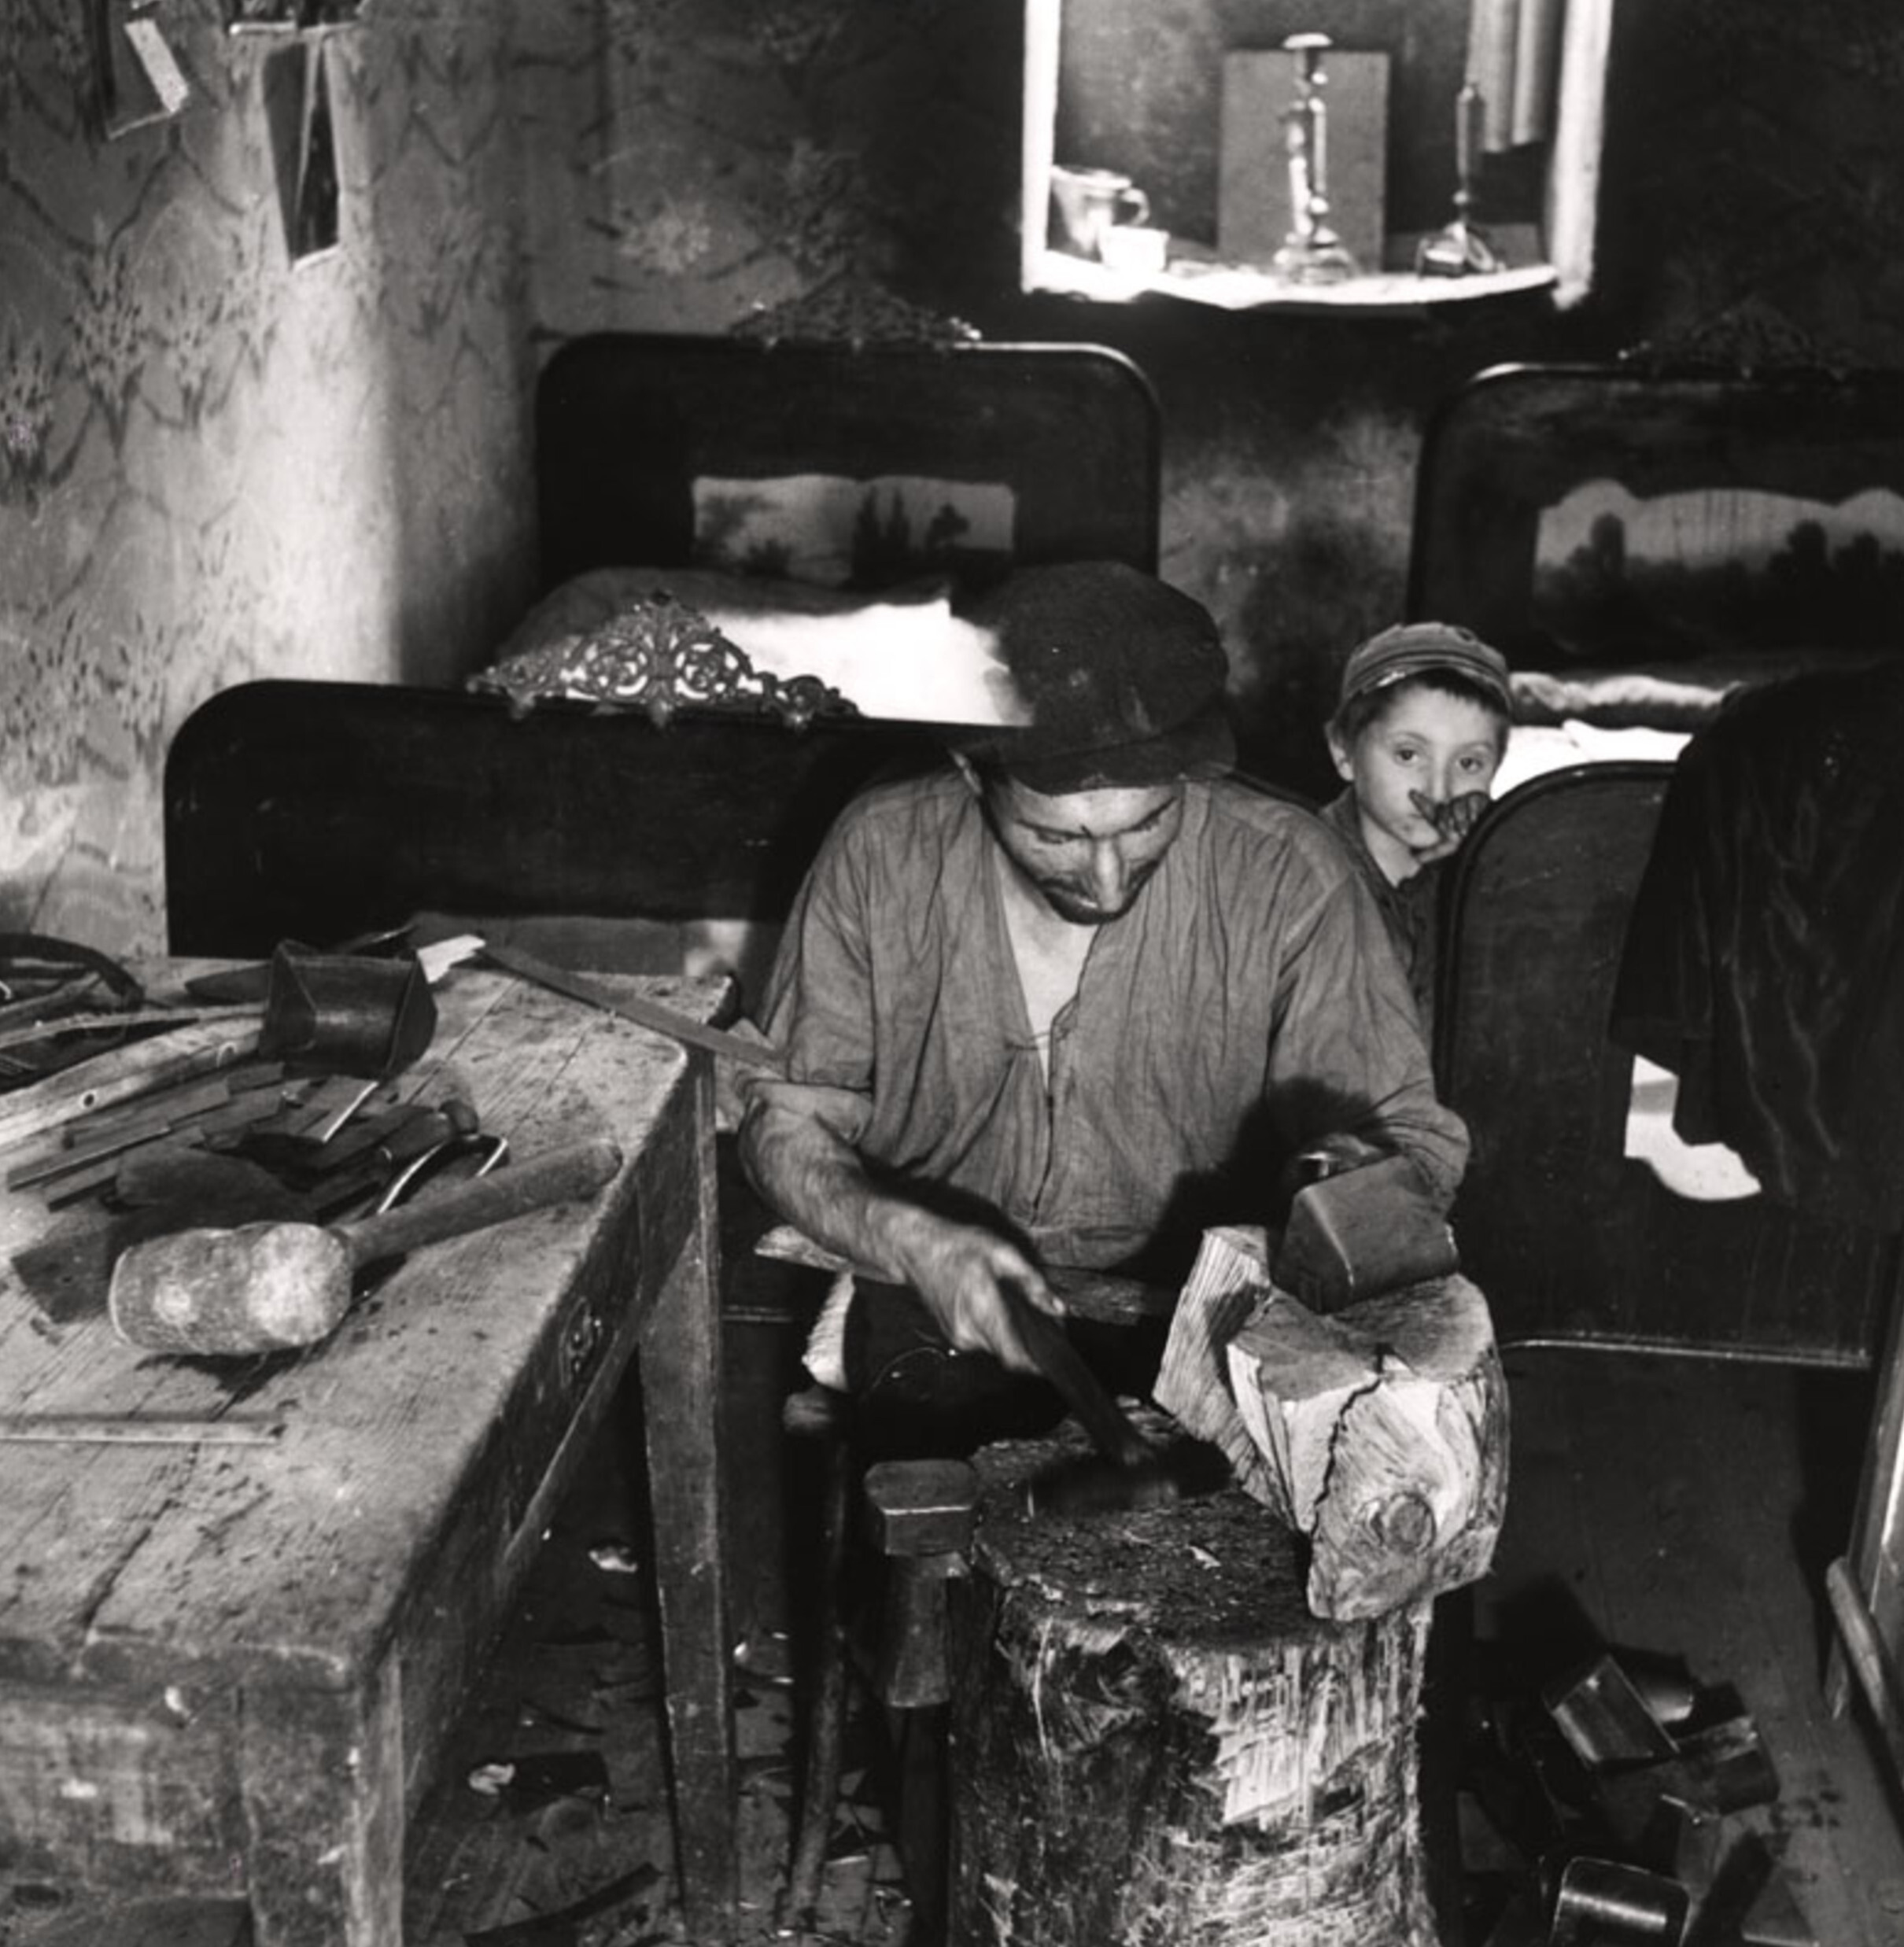 Подвальная металлическая мастерская и однокомнатная квартира, Варшава, ок. 1935-38 гг. Фотограф Роман Вишняк